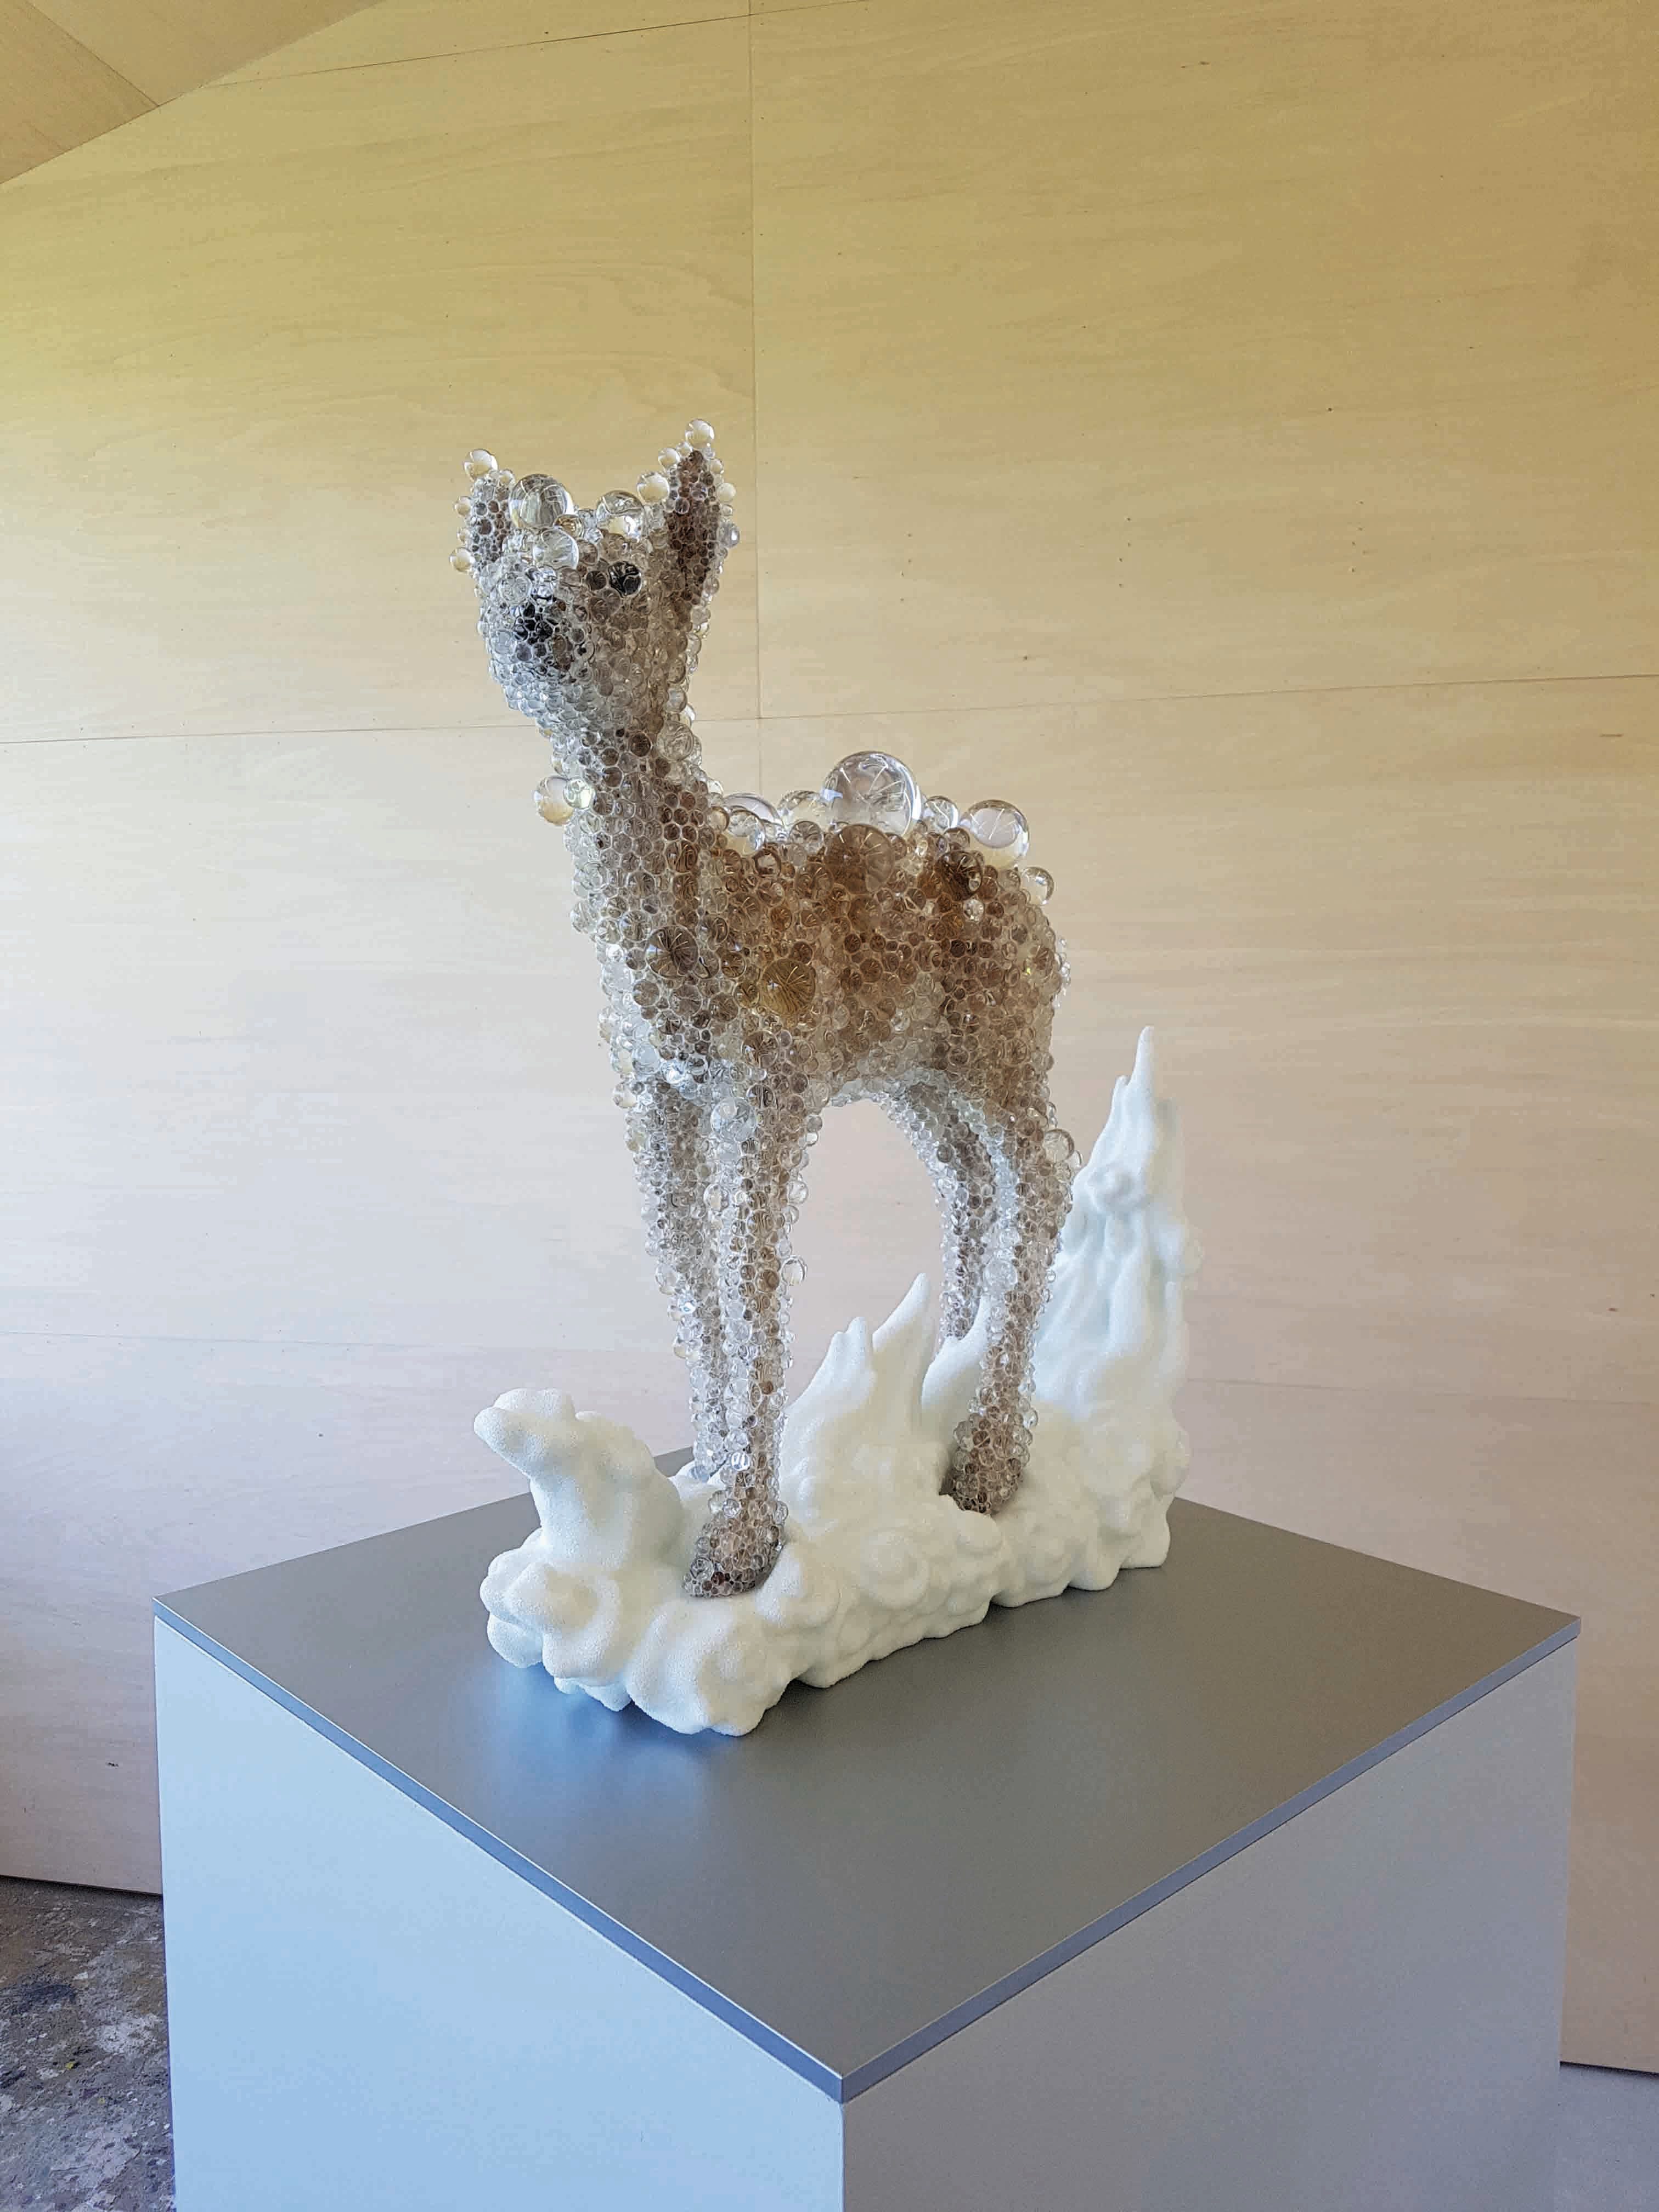 Dans son atelier en périphérie de Kyoto, Kohei Nawa poursuit sa série “PixCell”, réalisée notamment à partir de cerfs empaillés, dont l’une des œuvres a été adjugée 250 000 euros en novembre 2017.